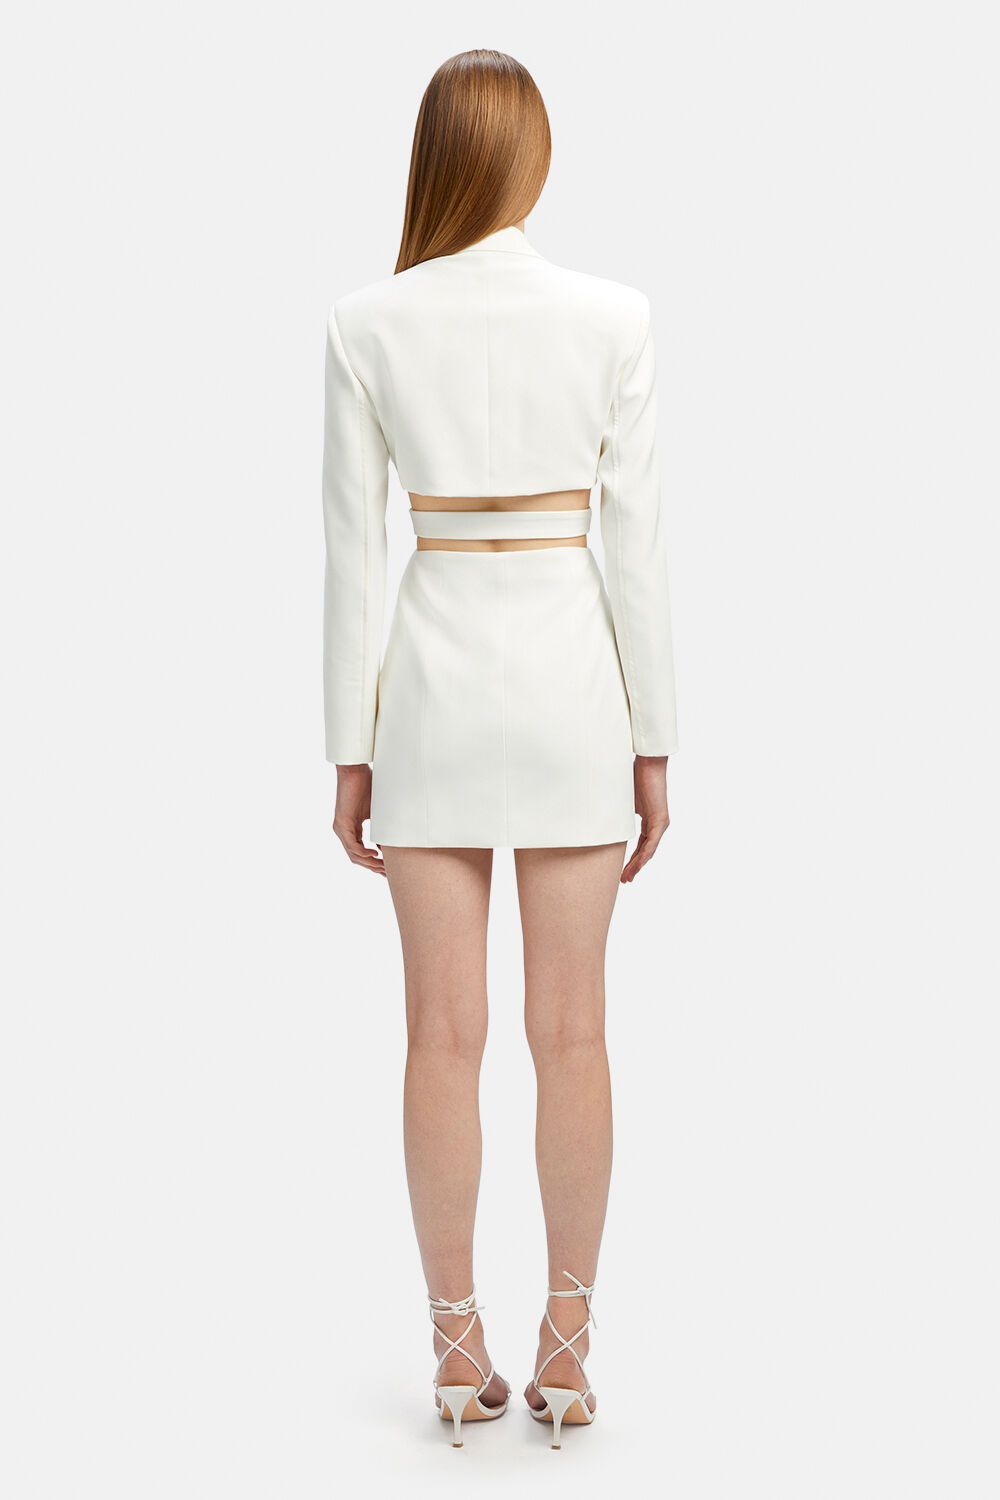 TRIBECA BLAZER DRESS in colour BRIGHT WHITE